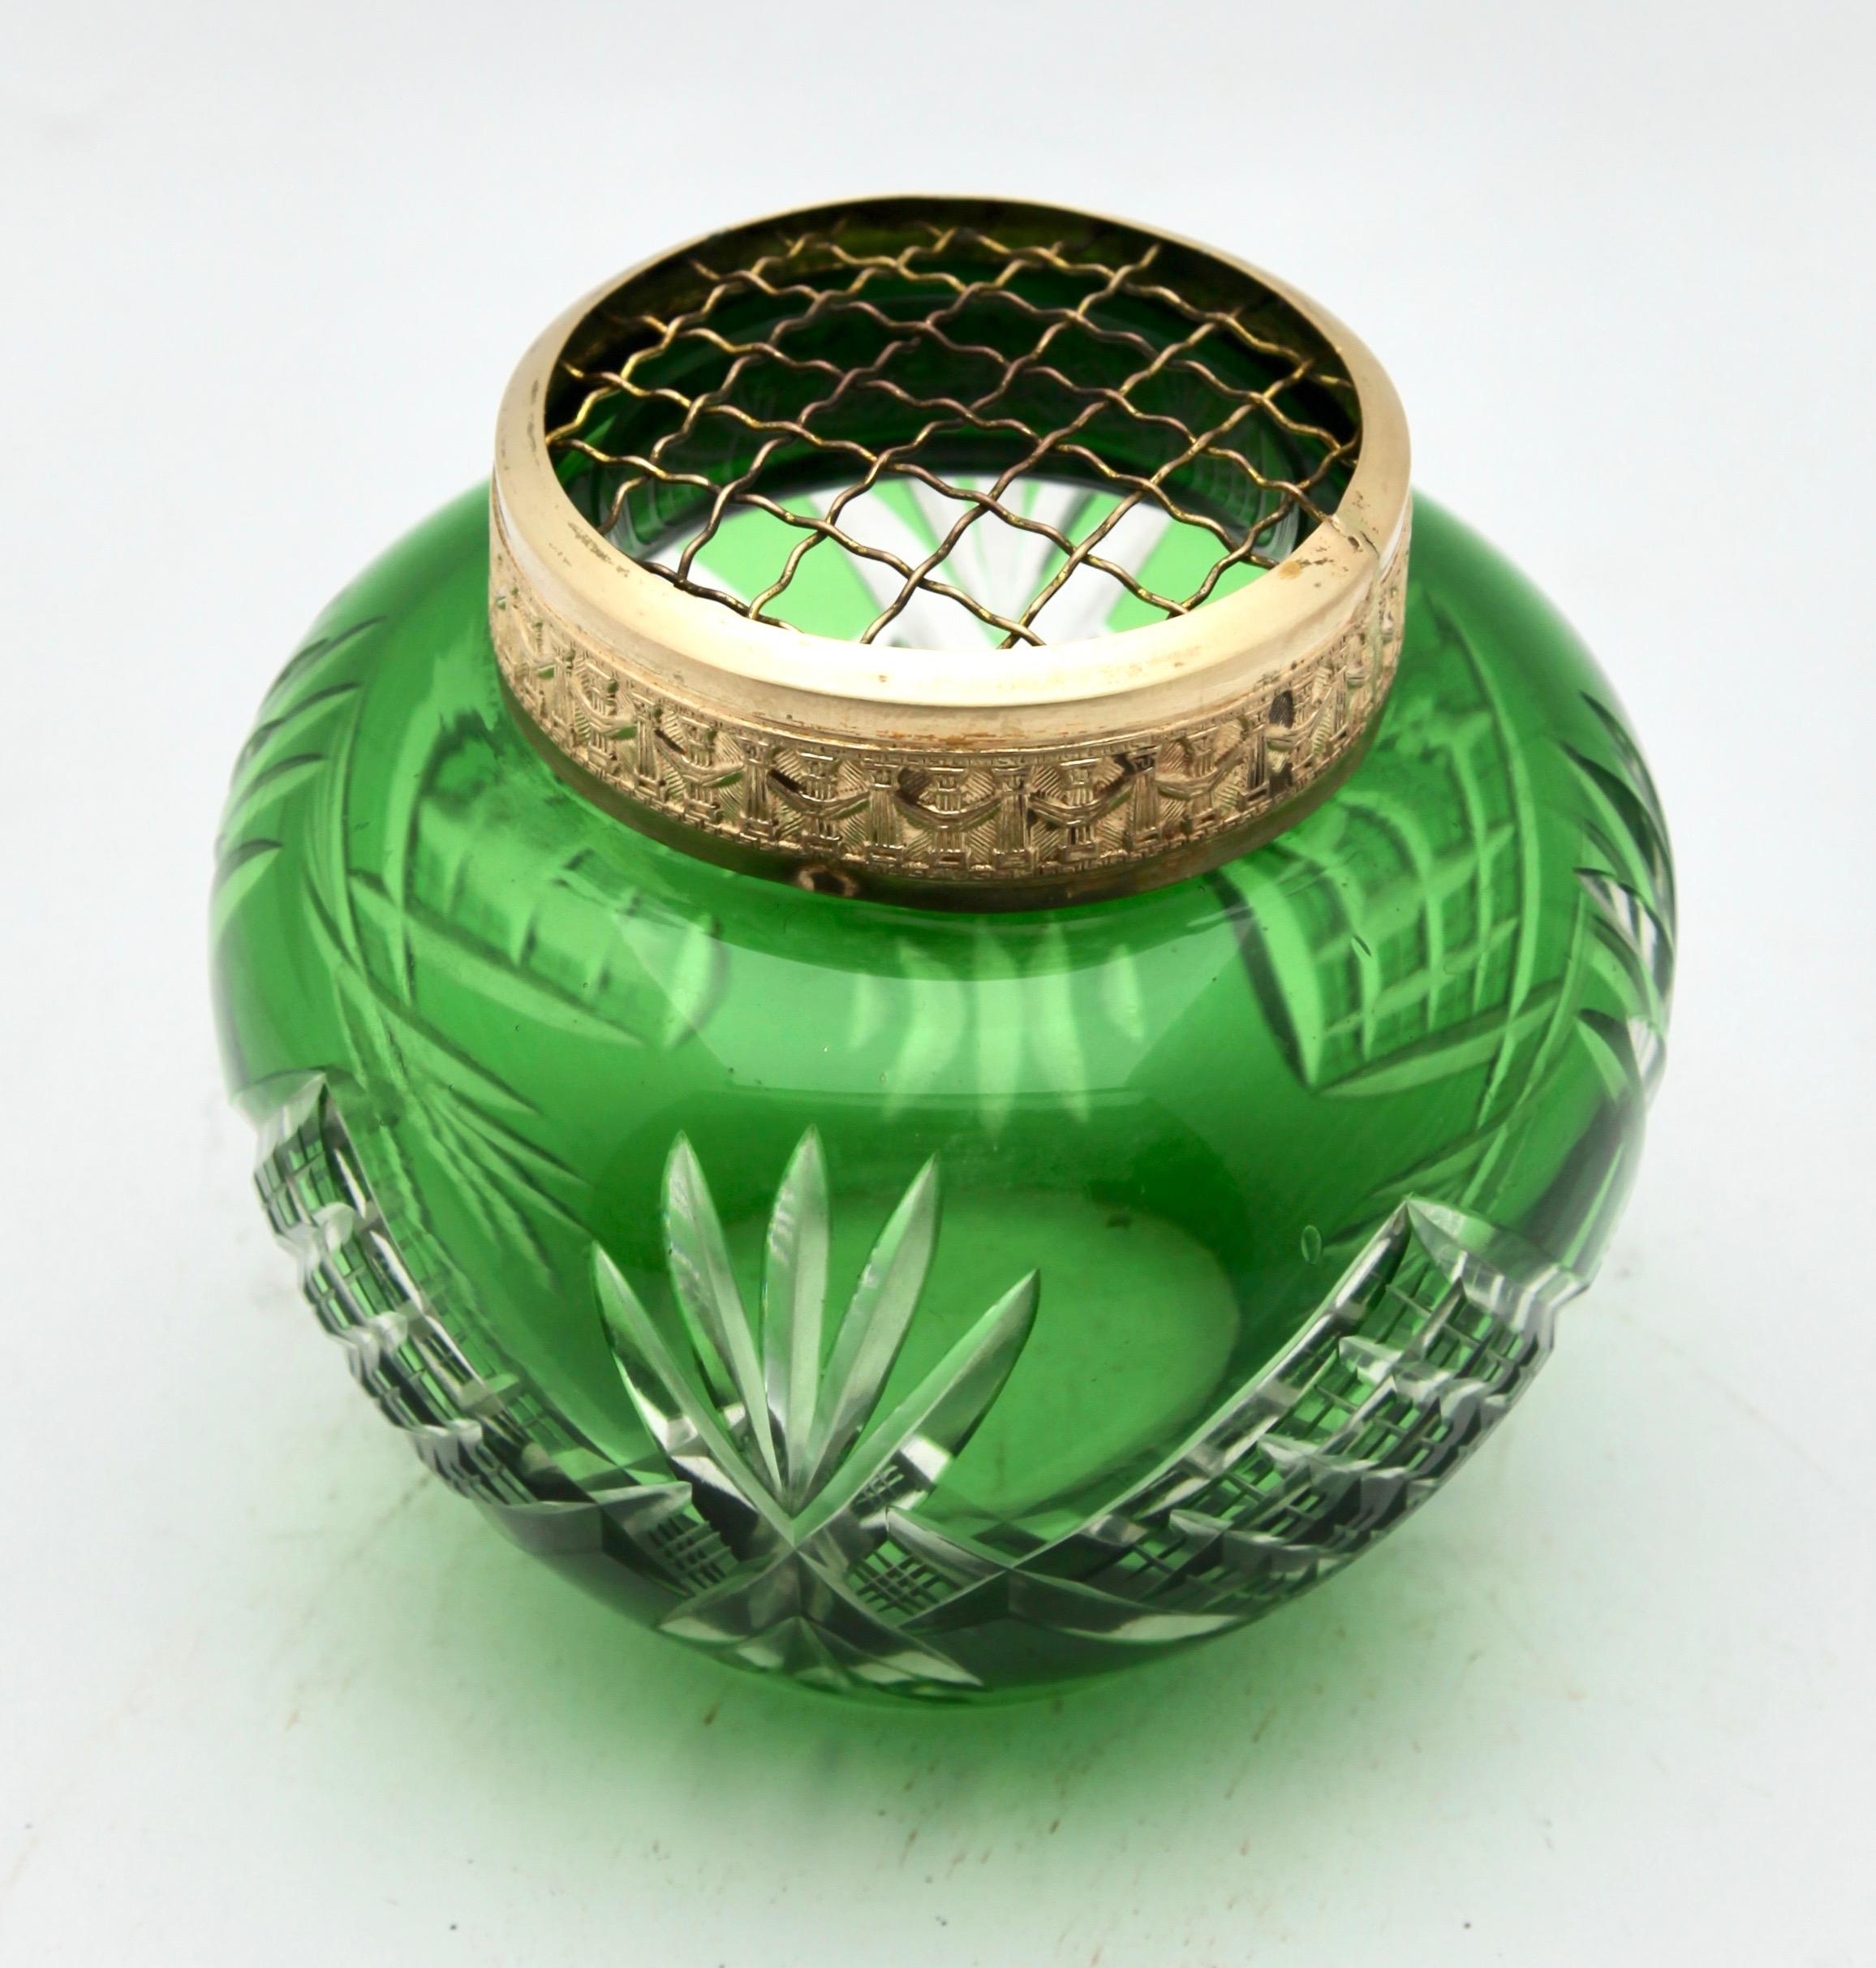 Vase de style bohémien en verre de cristal moulé de couleur vert prairie, avec un décor de palmiers et de treillis taillés dans la masse. Ce modèle de vase est souvent appelé 